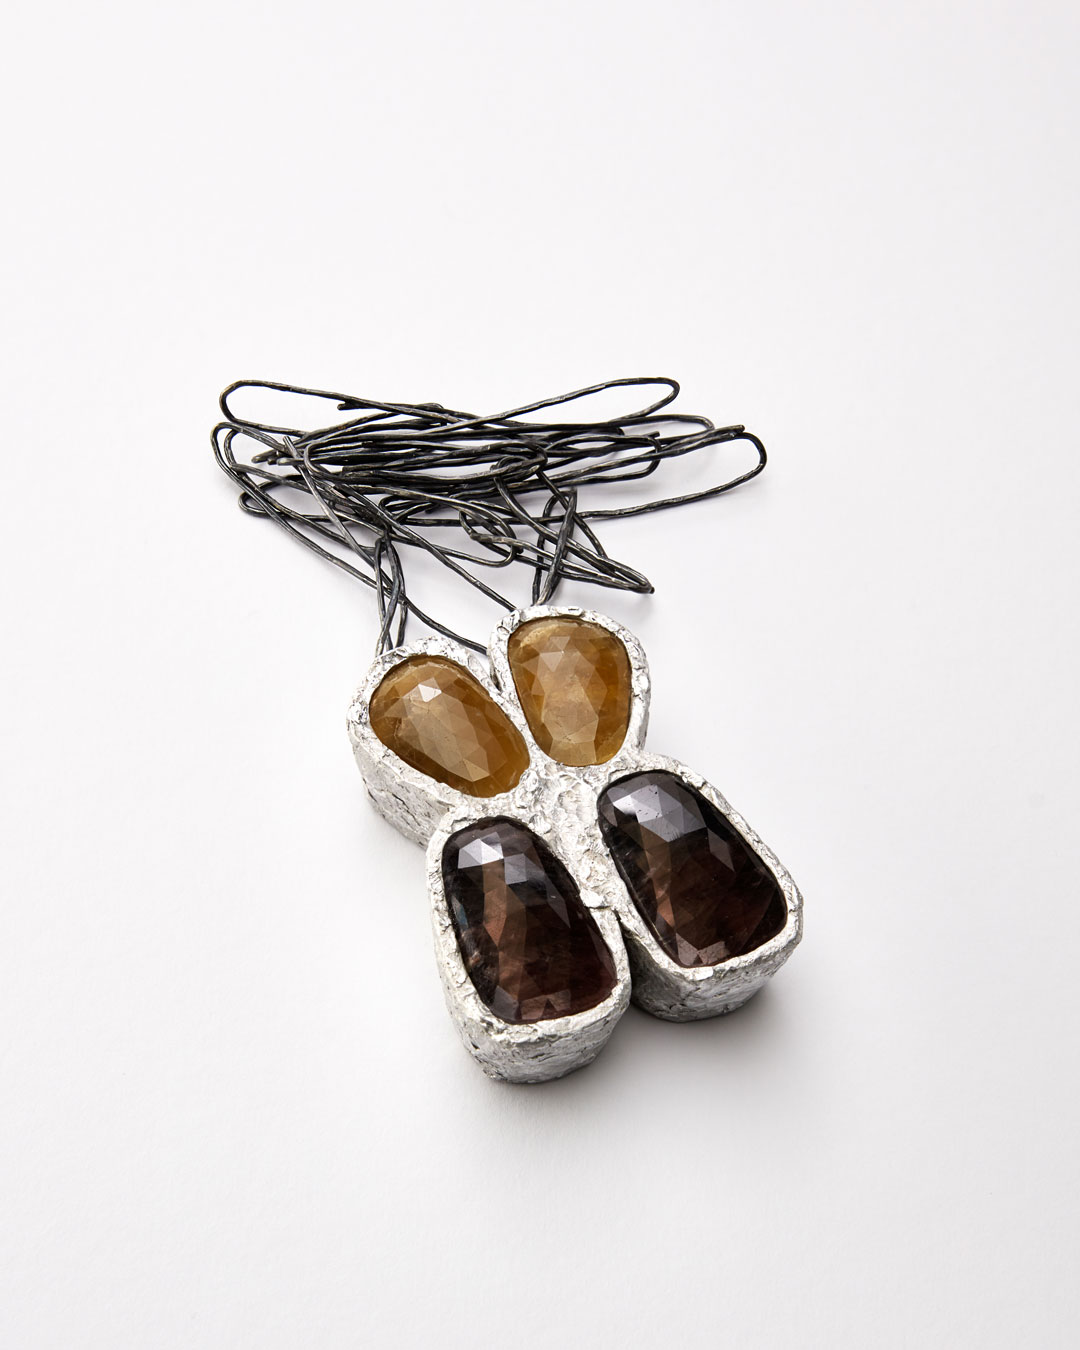 Iris Bodemer, Ordnung 1 (Array 1), 2019, pendant; aluminium, sapphire, silver, 90 x 65 x 25 mm, €4250